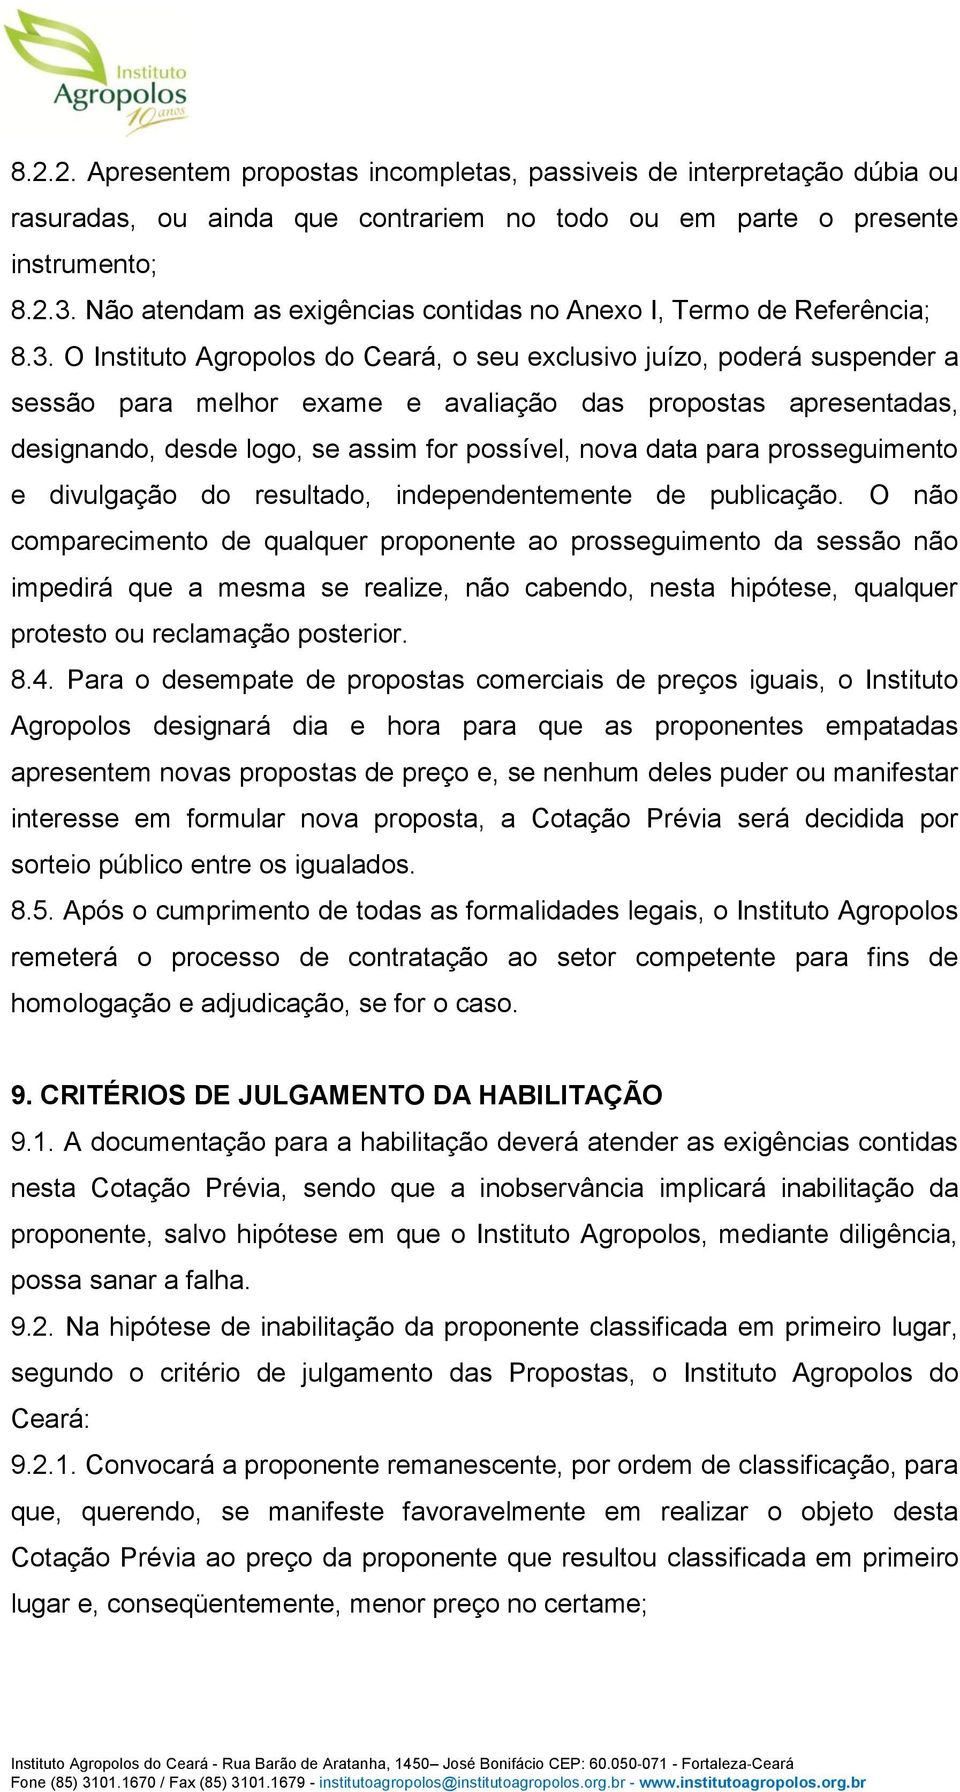 O Instituto Agropolos do Ceará, o seu exclusivo juízo, poderá suspender a sessão para melhor exame e avaliação das propostas apresentadas, designando, desde logo, se assim for possível, nova data